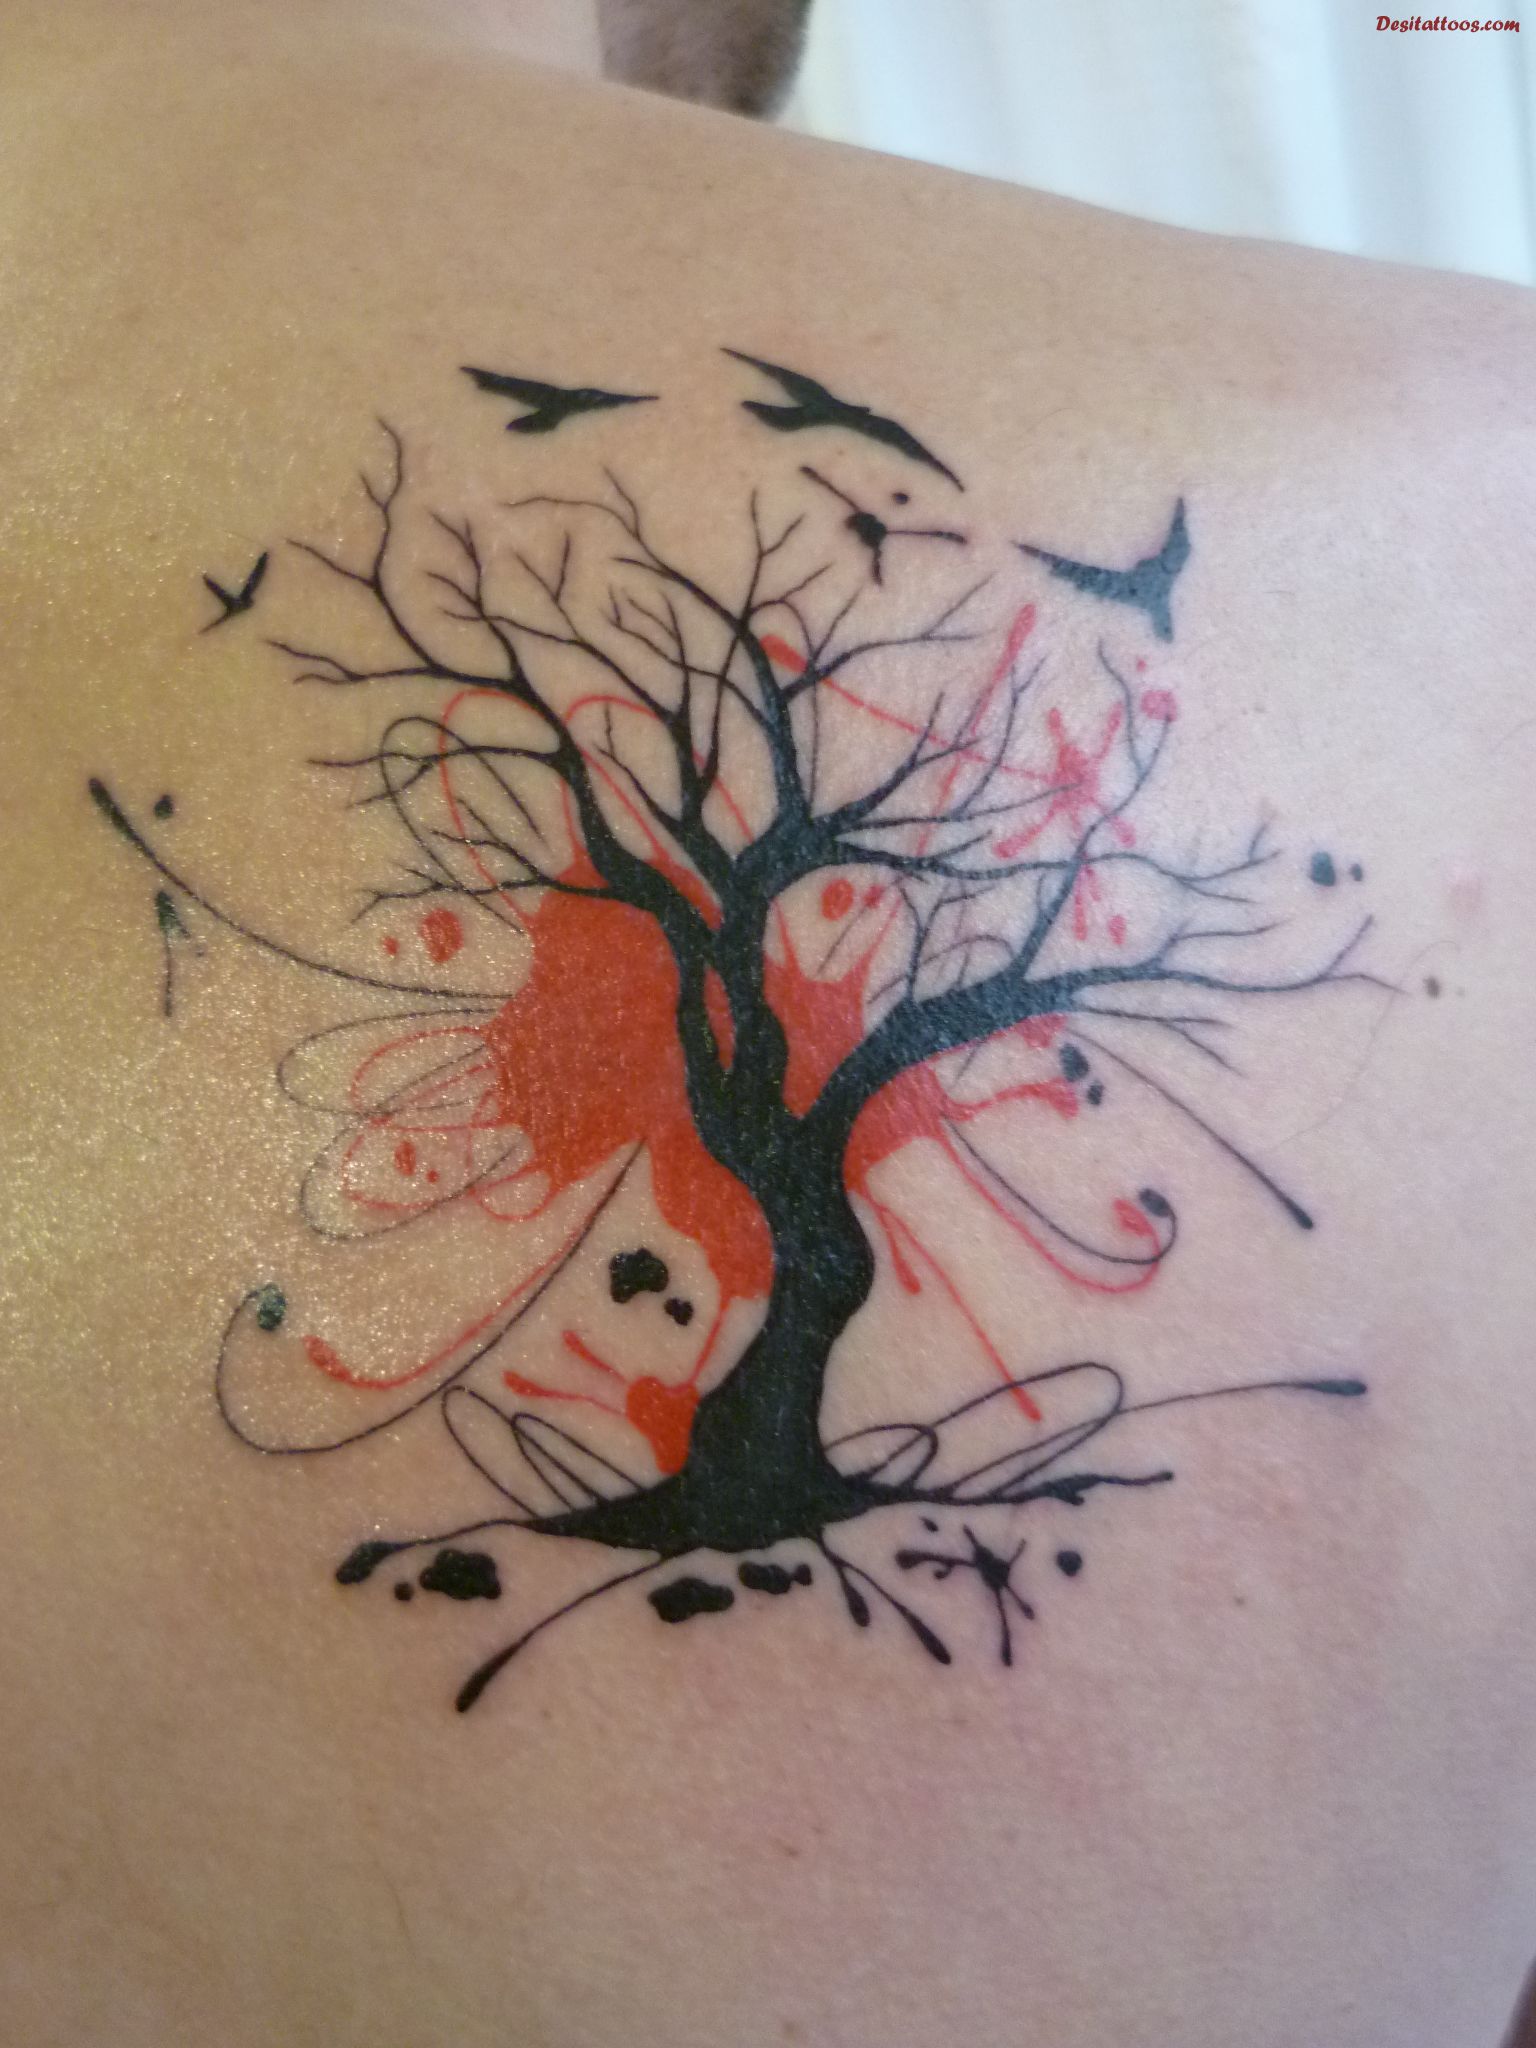 Red birds and black tree tattoo | Tattoomagz.com › Tattoo Designs ...